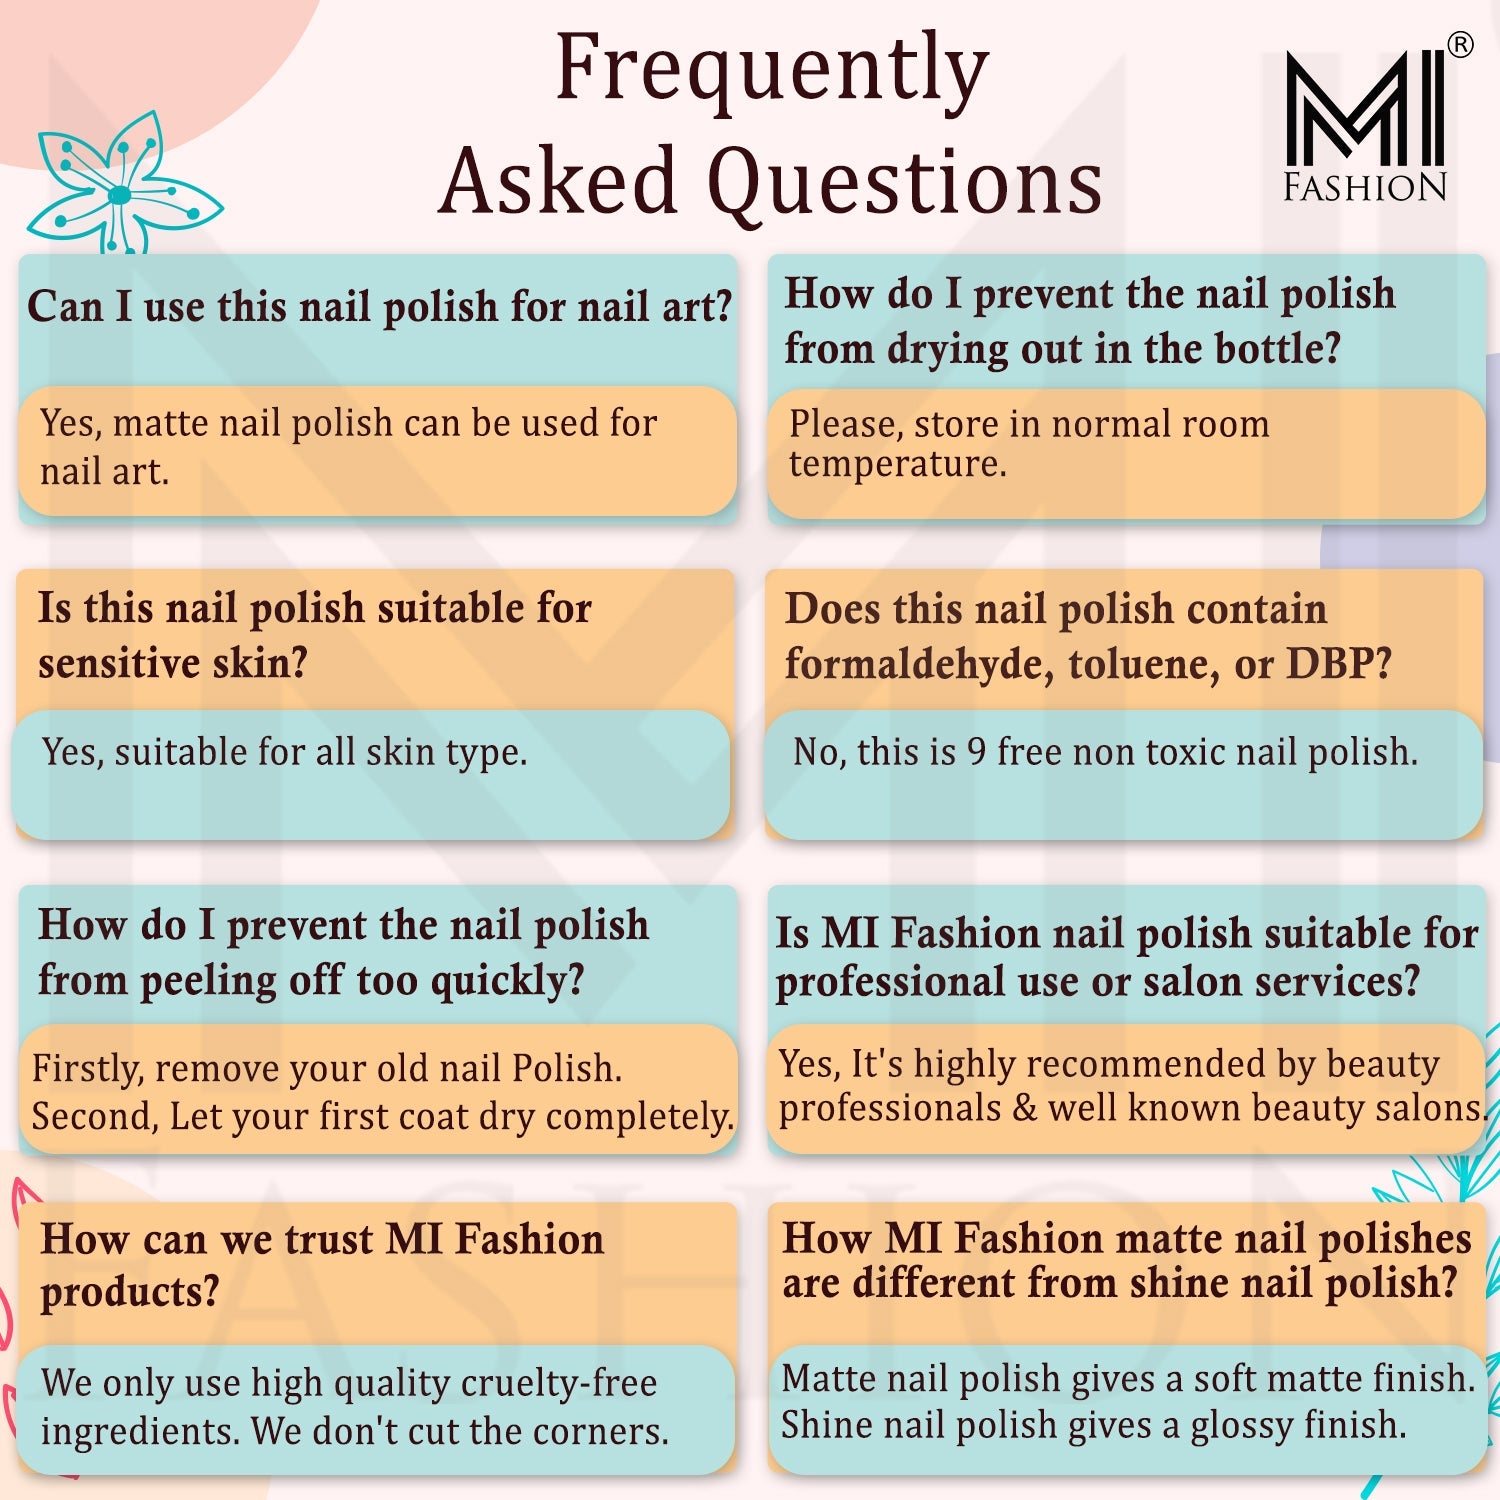 MI Fashion Shine Nail Polish FAQs